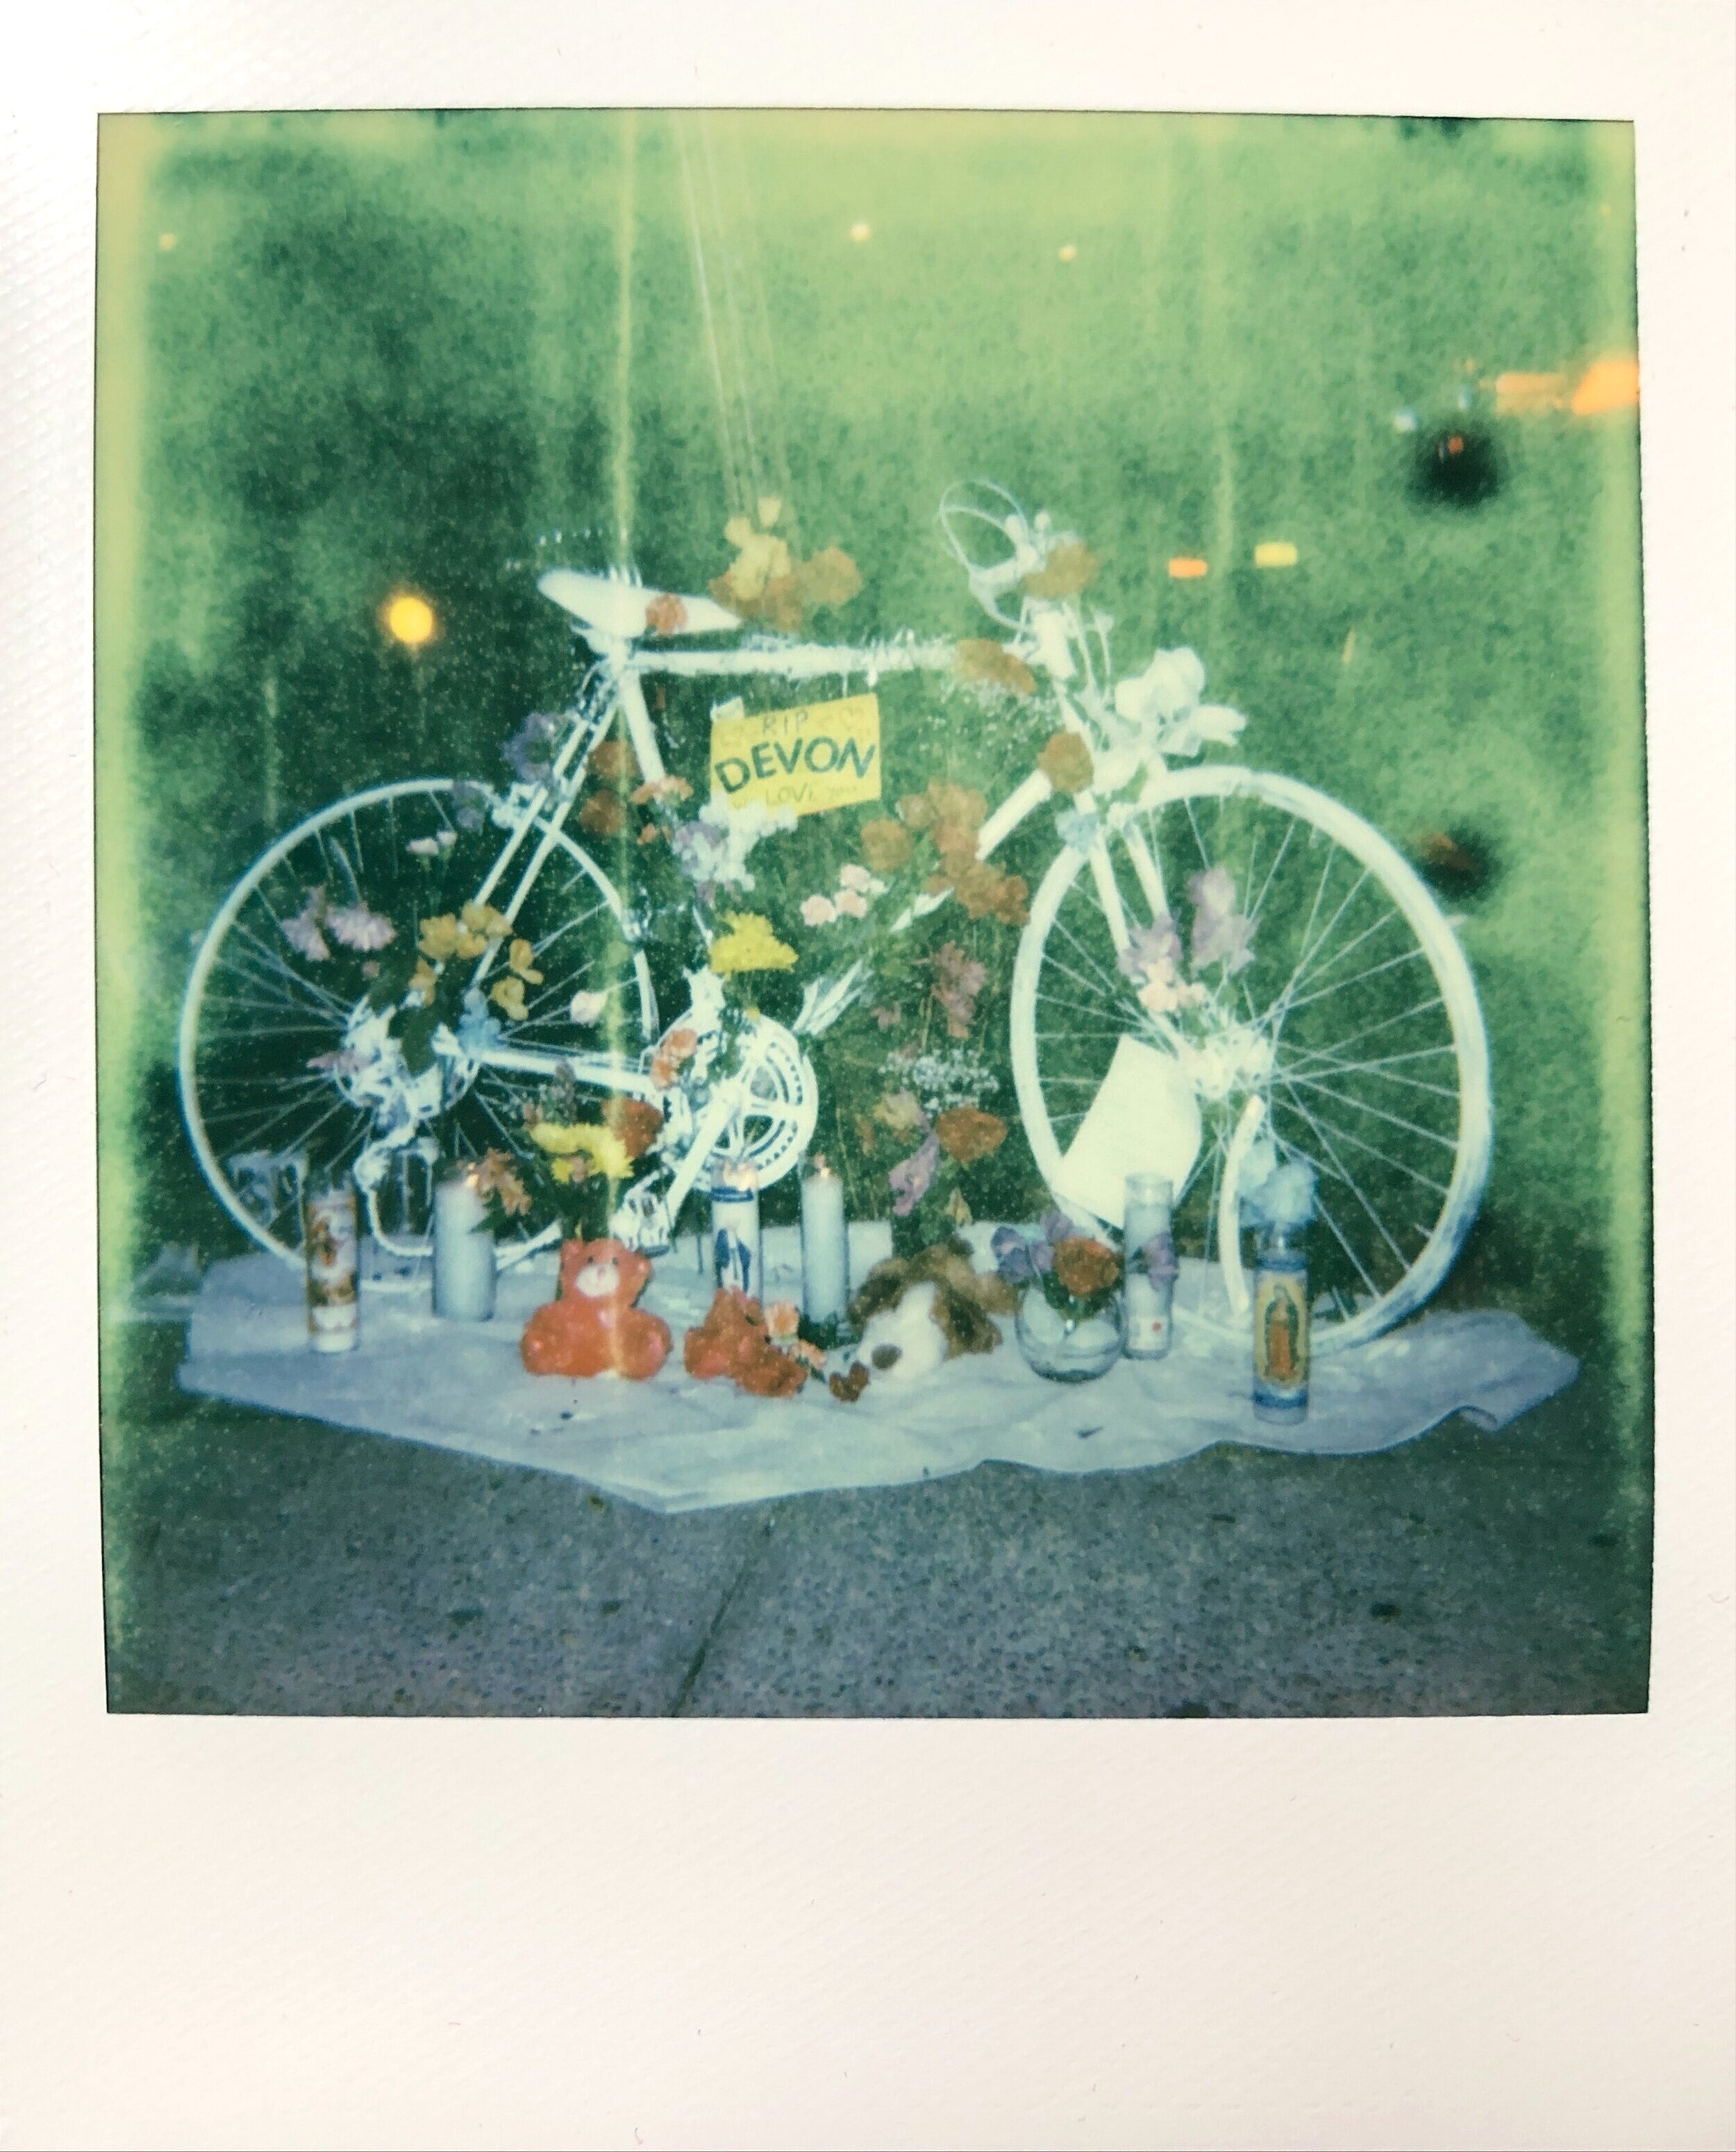 Memória em Branco – um documentário sobre Ghost Bikes